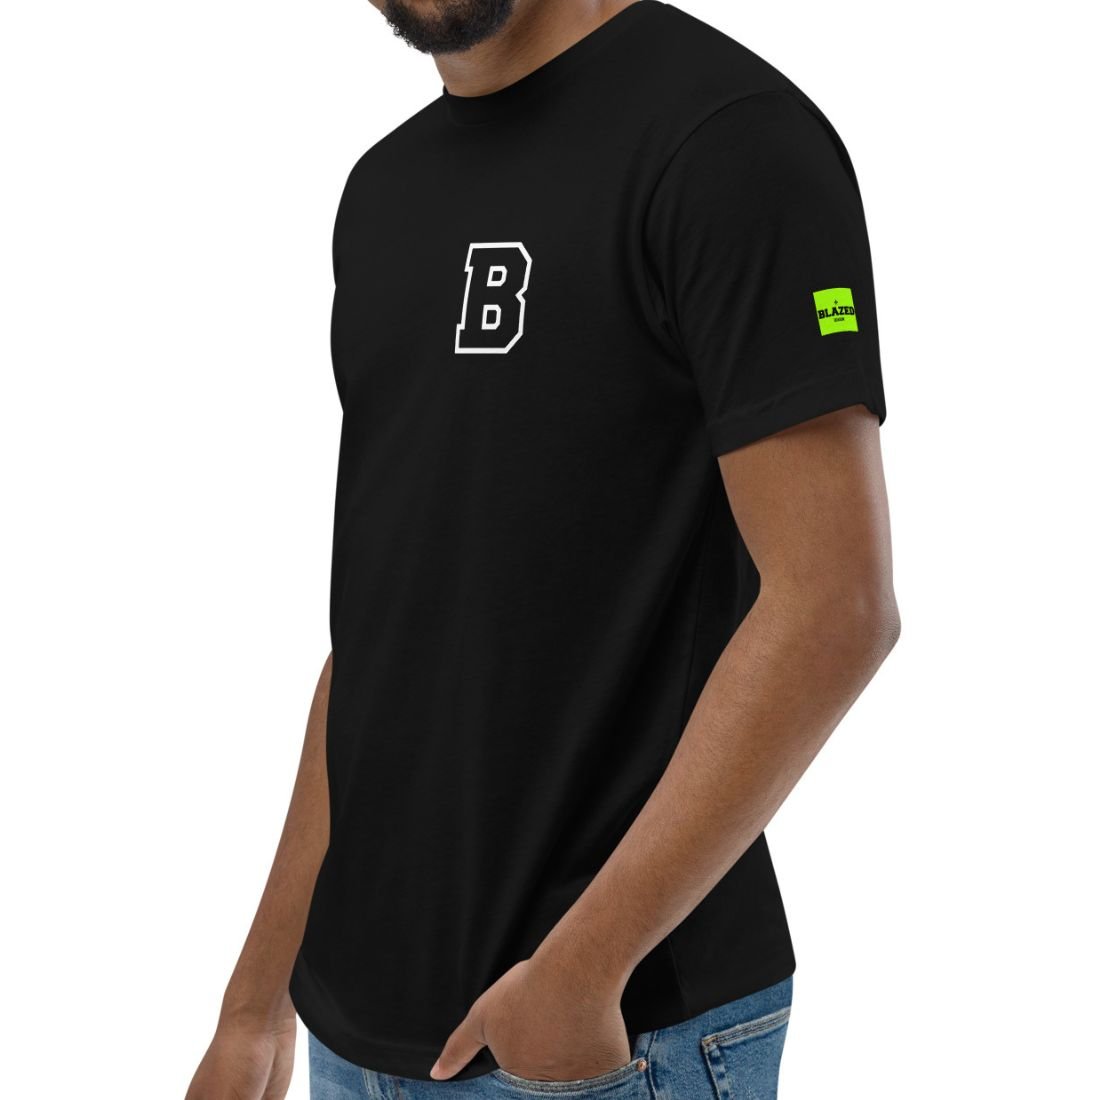 B & Leaf Unisex T-Shirt - Black - Blazed Wear